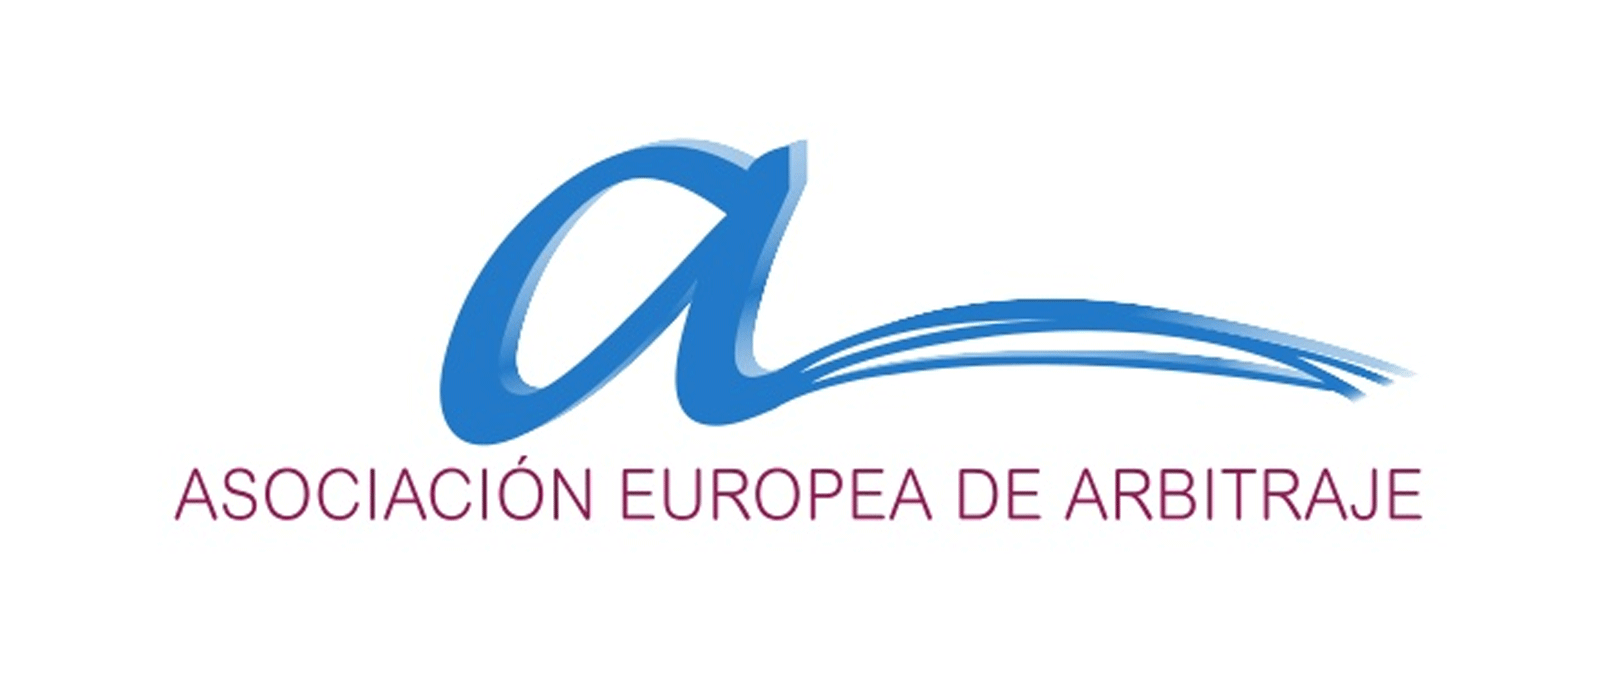 Asociación Europea de Arbitraje | Corte de Arbitraje 